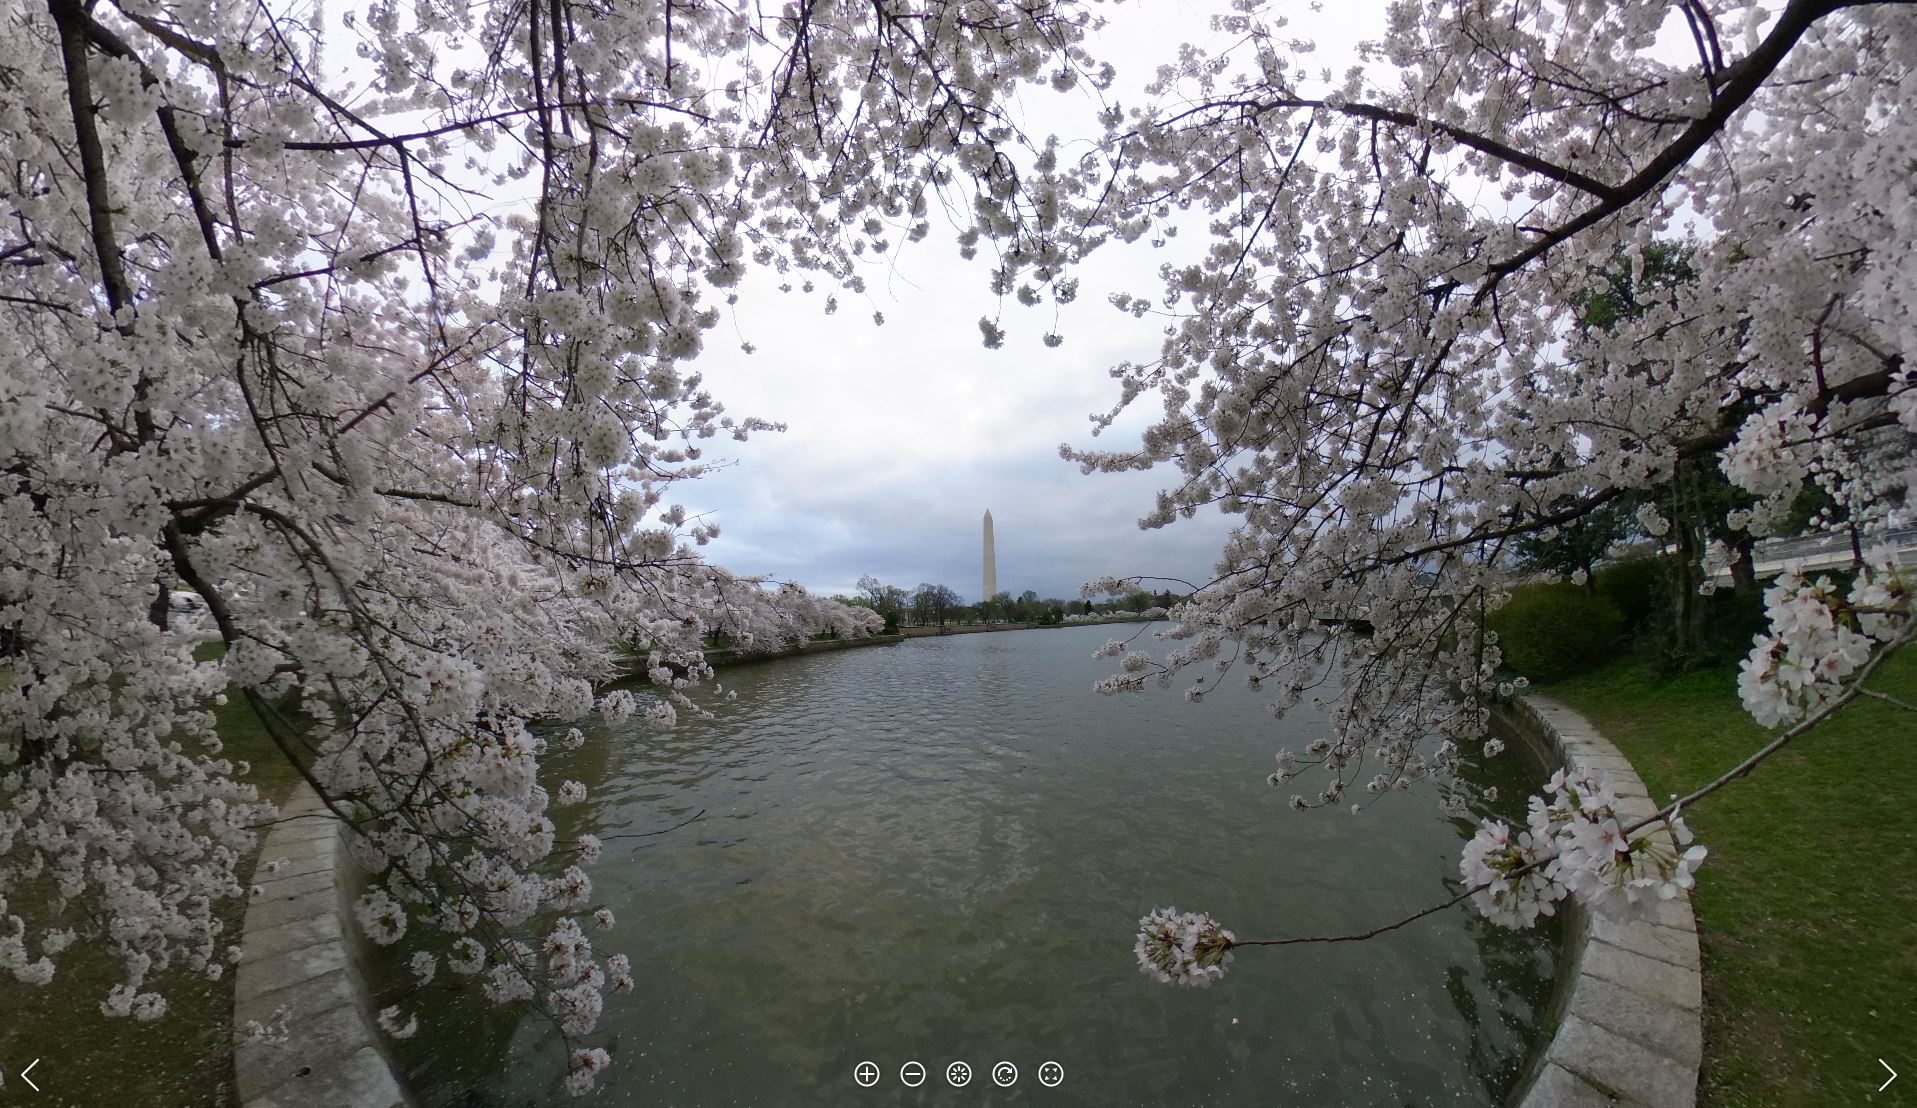 360° Virtual Cherry Blossom Tours - Cherry Blossom Festival (U.S. National Park Service)